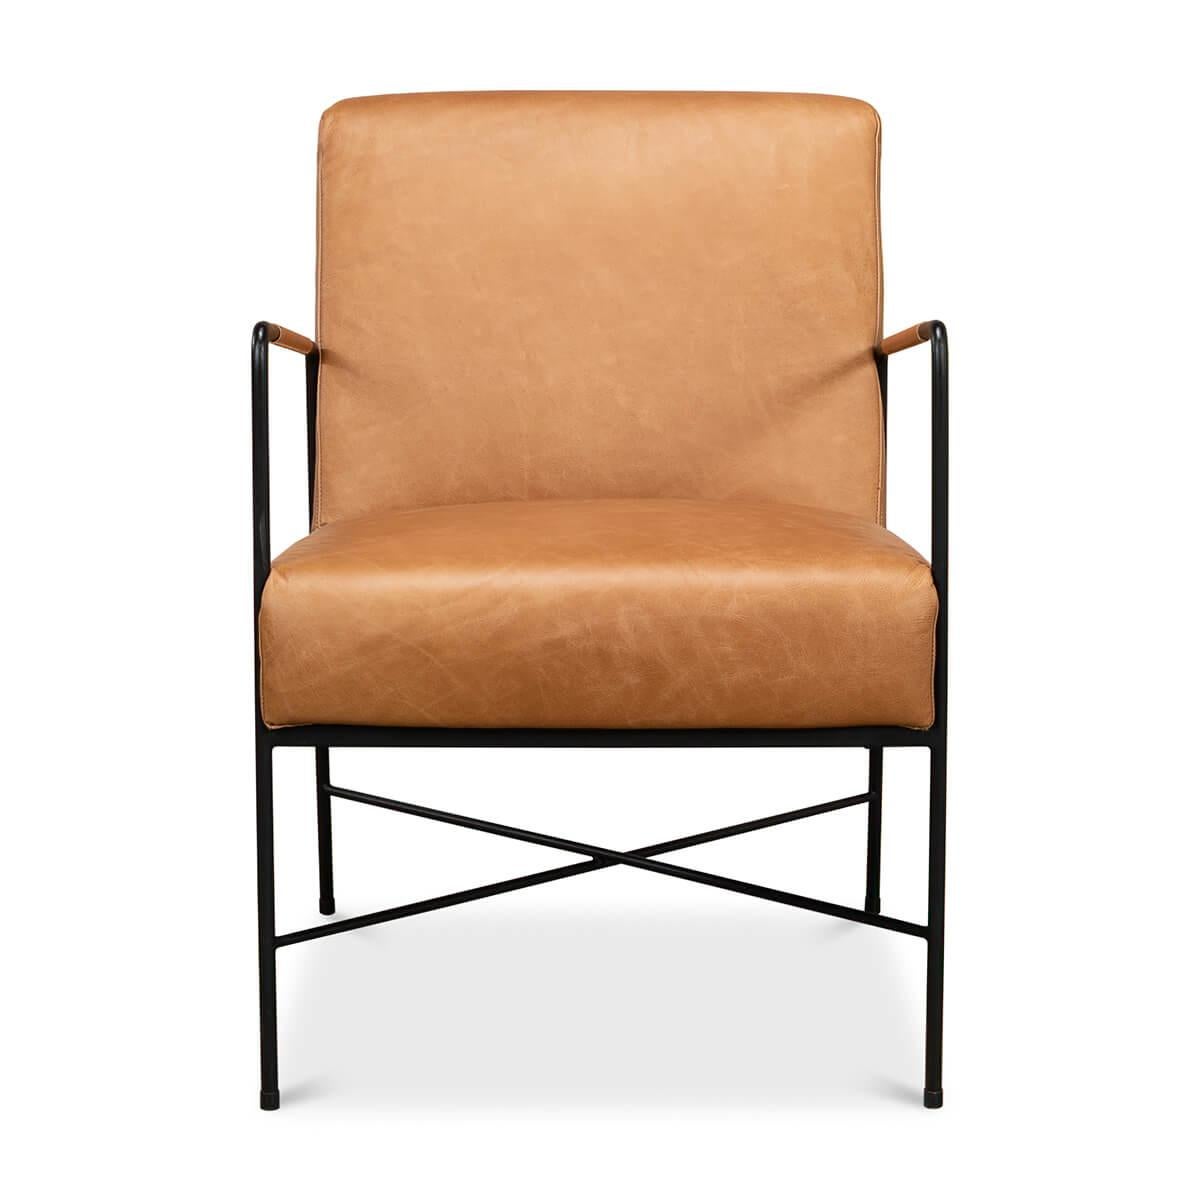 Fauteuil moderne en fer avec dossier et assise à coussin en cuir marron harnais clair sur un châssis de chaise moderne en fer.

Dimensions : 22